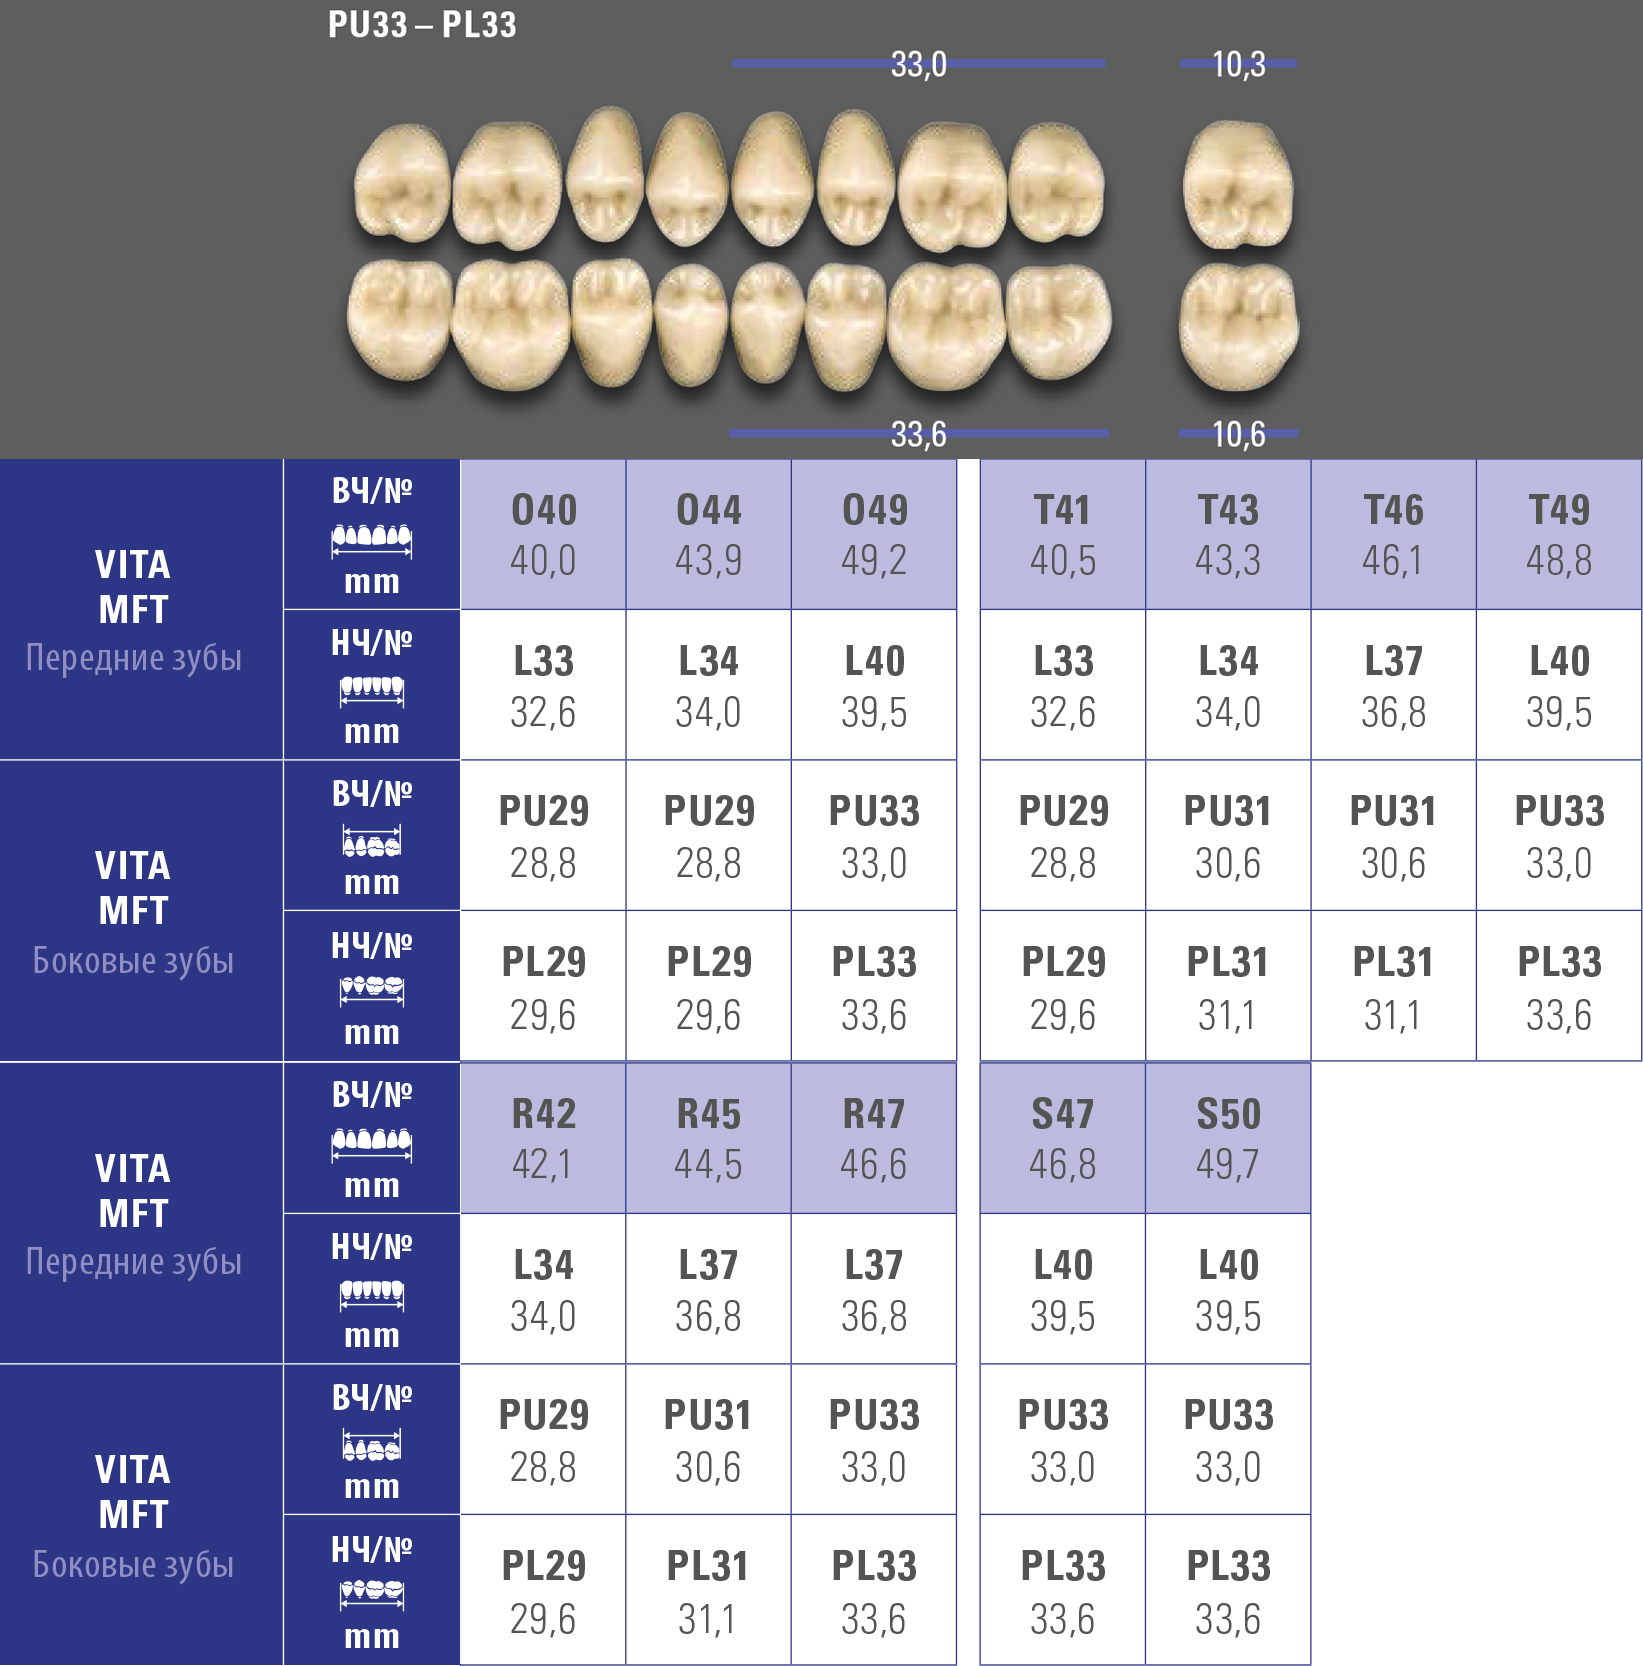 Зубы MFT верхние жевательные (8 шт) Vita